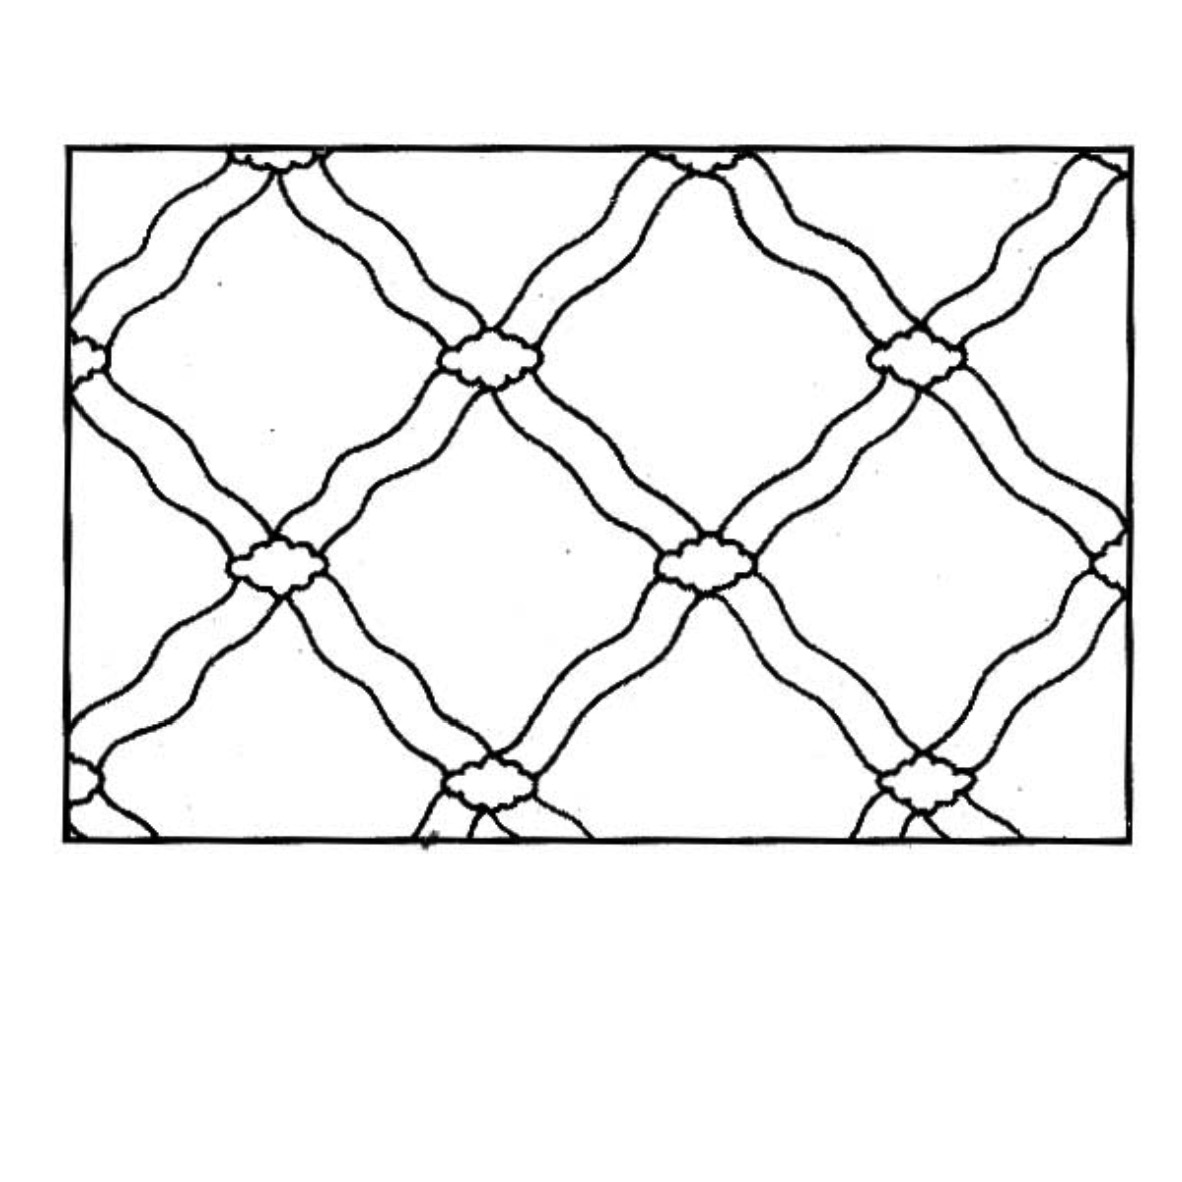 Corak batik: gambar untuk corak batik